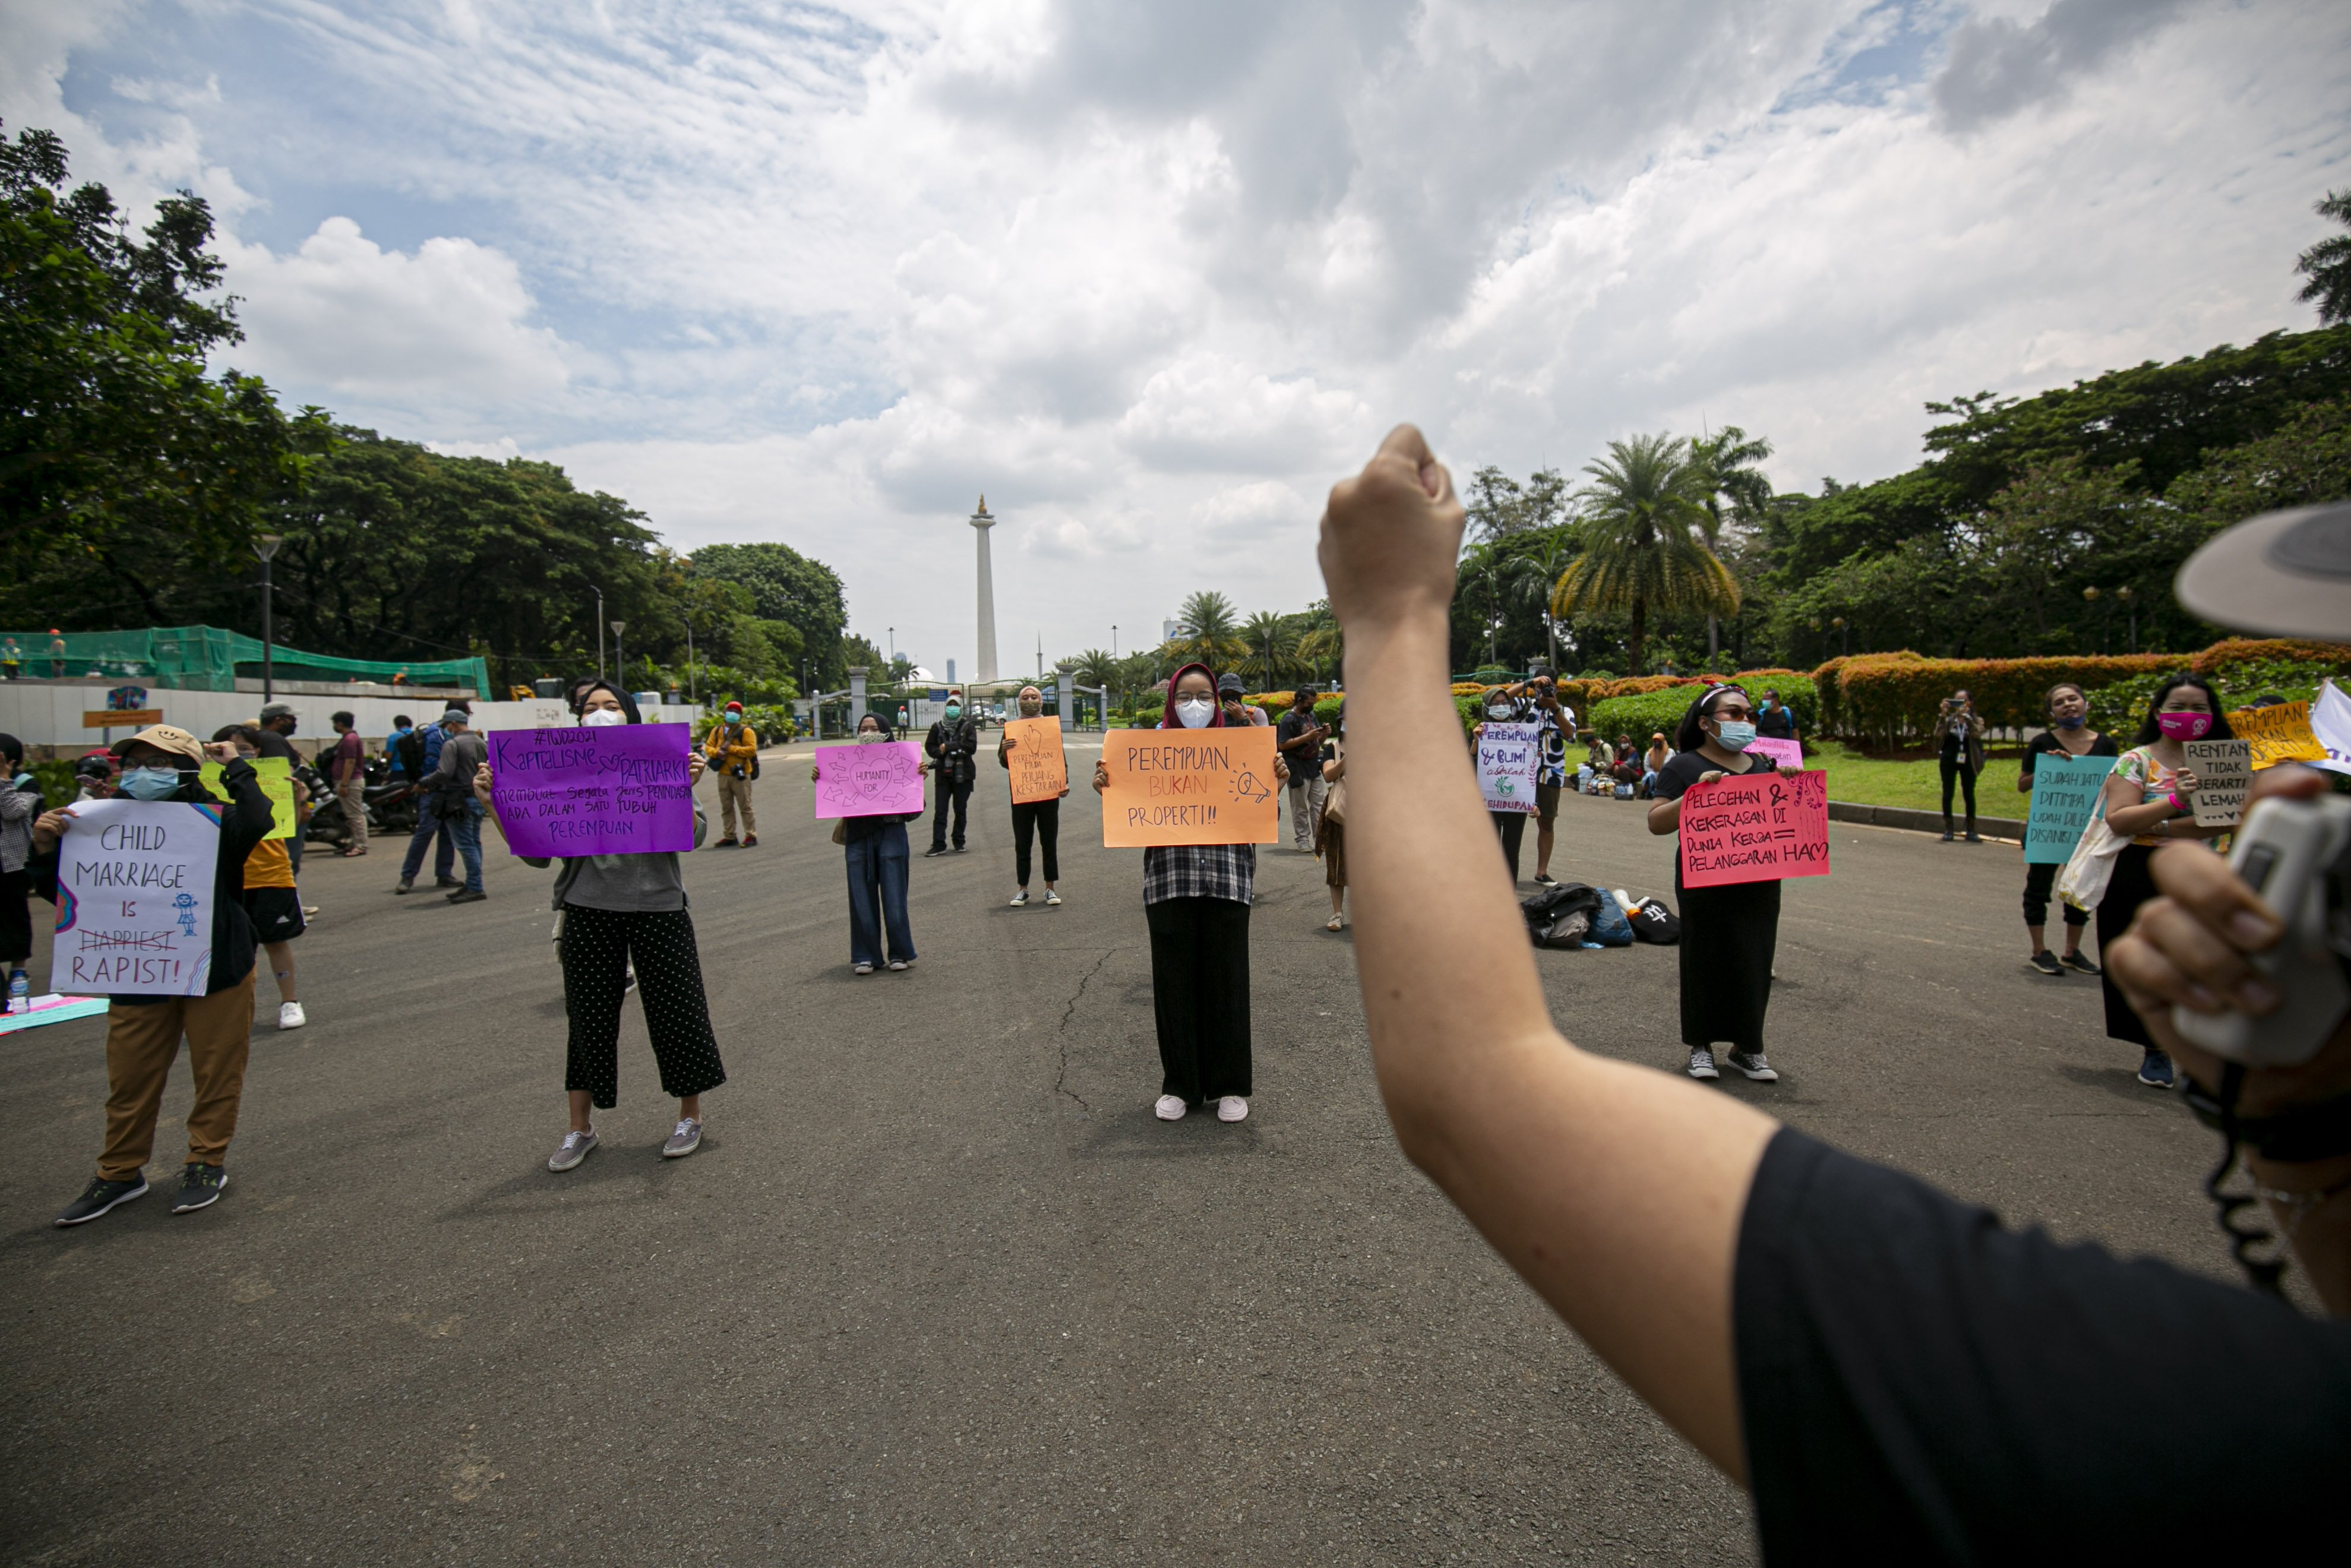 Sejumlah aktivis perempuan melakukan aksi unjuk rasa di Kawasan Patung Kuda Arjuna Wijaya, Senin (8/3/2021). Aksi tersebut dalam rangka memperingati Hari Perempuan Sedunia. Dalam aksinya mereka meminta pemerintah mengakui kekeresan seksual sebagai pelanggaran HAM, Cabut UU Cipta Kerja serta sahkan RUU PKS dan RUU PPRT. 